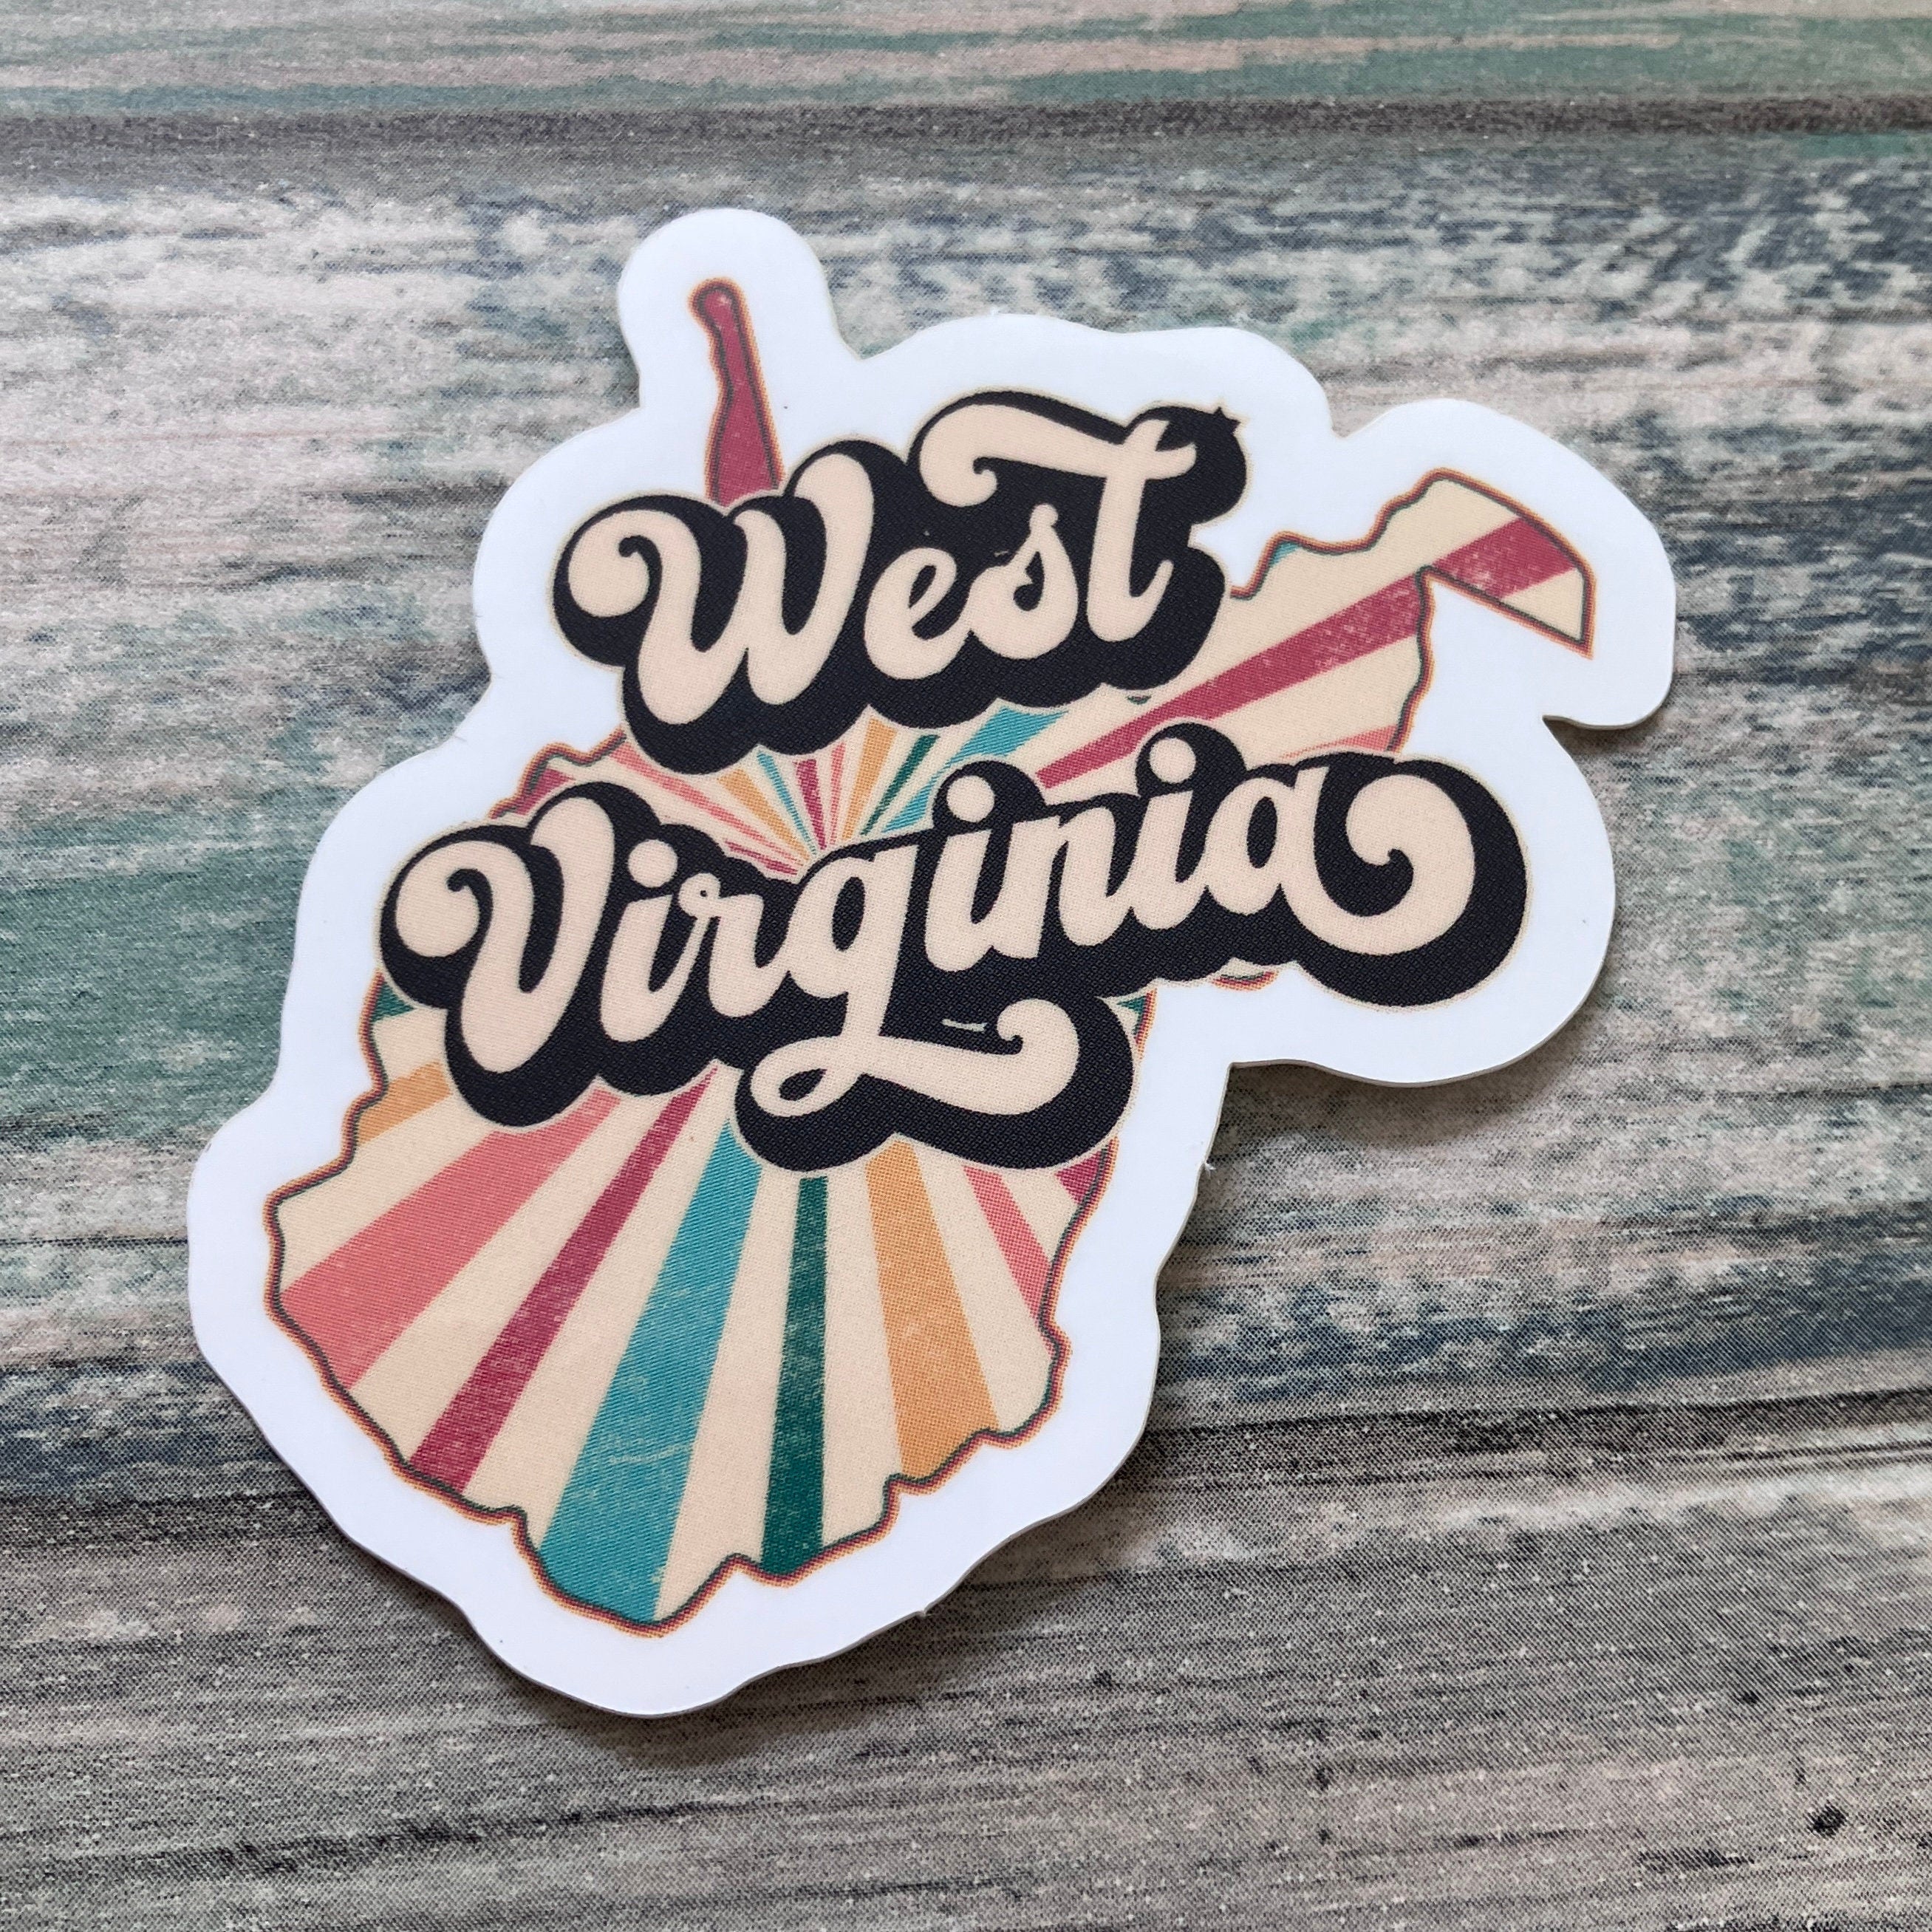 West Virginia Sticker - Vinyl Sticker - Vinyl WV Sticker - Retro Sticker - Vintage Sticker - Retro West Virginia Sticker - Retro WV Sticker